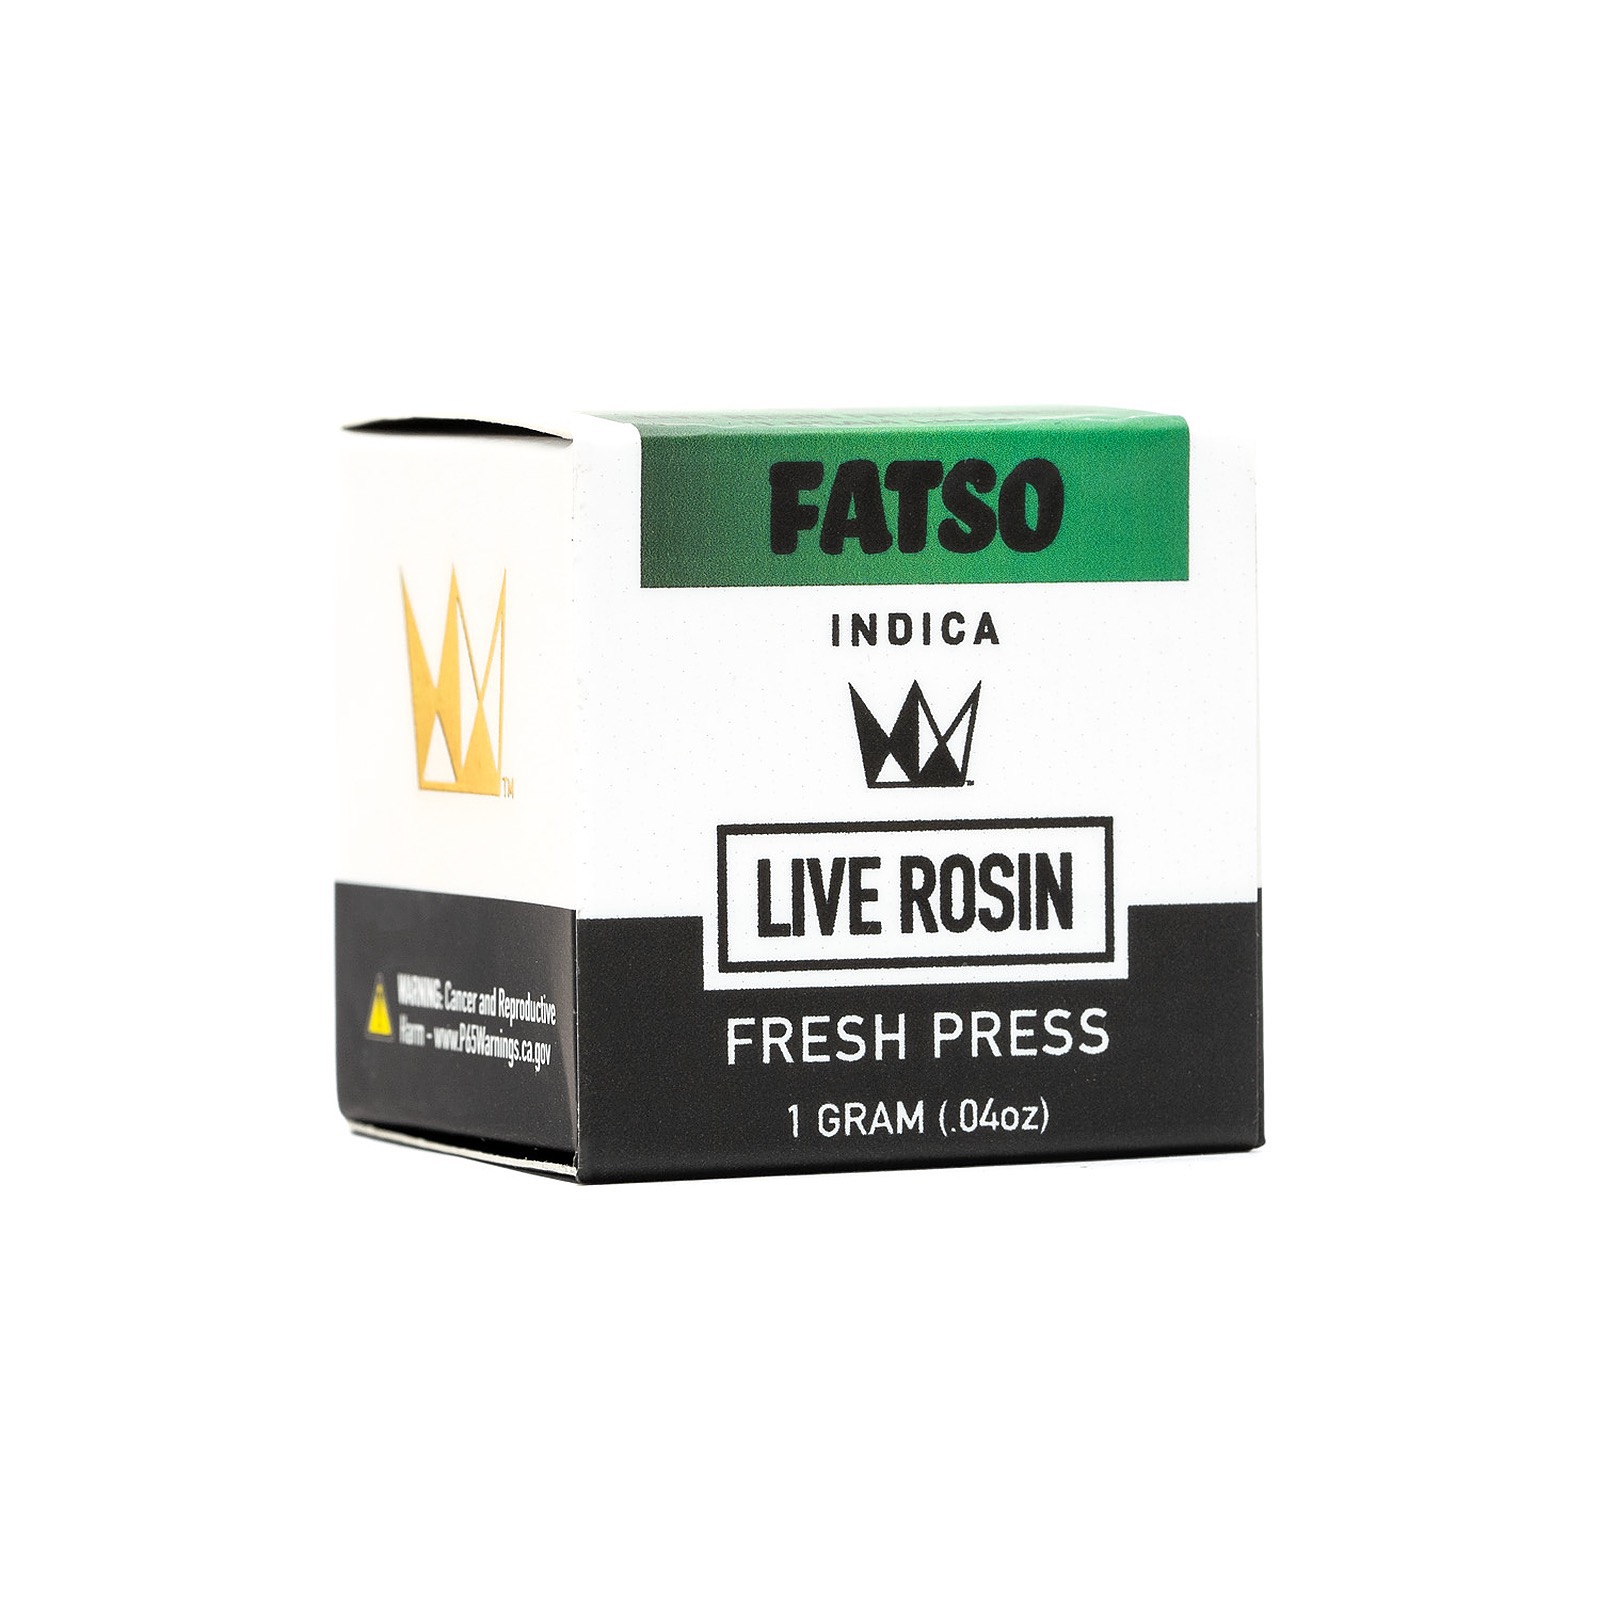 Fatso Rosin by Nasha